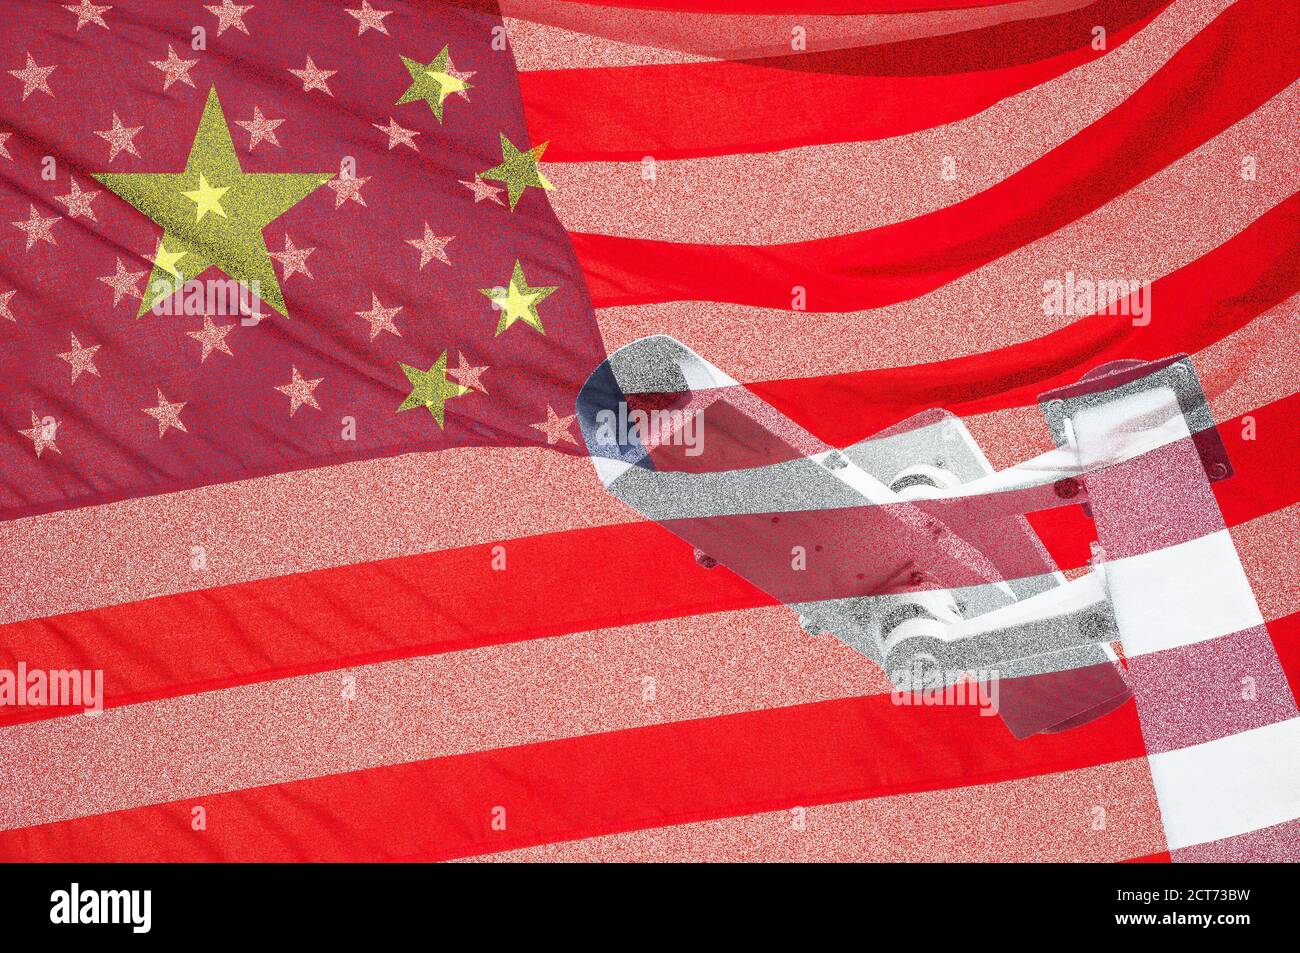 CCTV-Kamera auf Flagge von China und USA überlagert: Staatliche Überwachung, Spionage, Handelskrieg..., Konzept Stockfoto